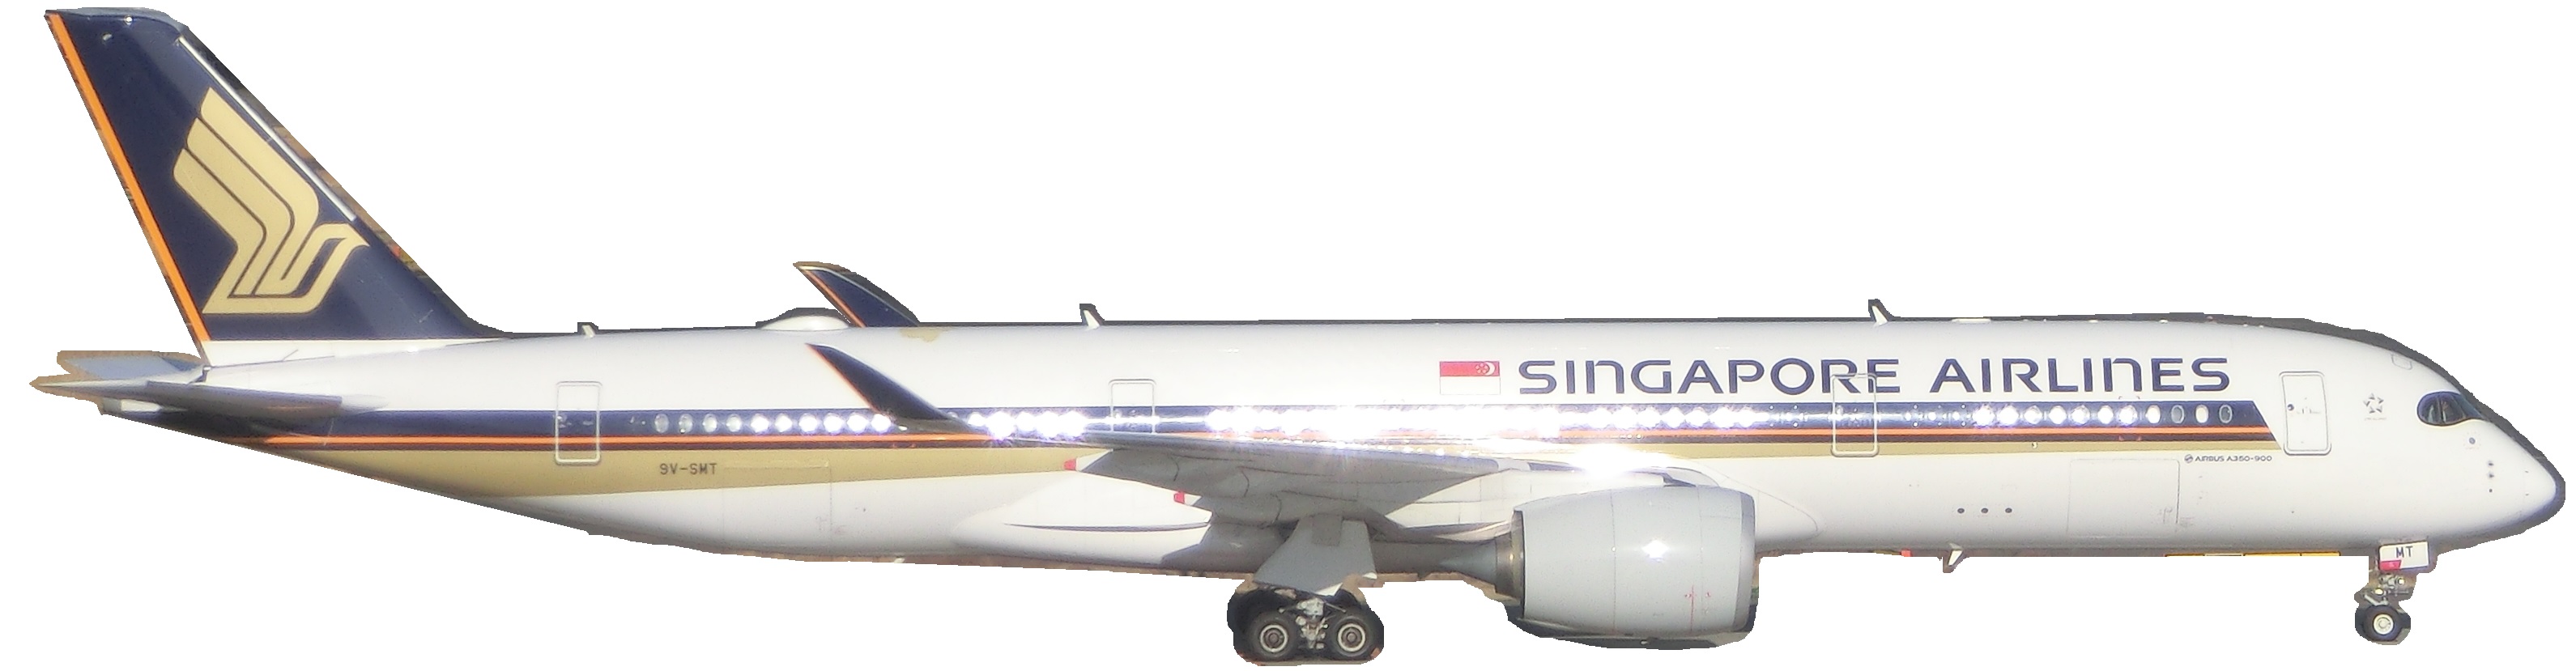 A3509V-SMT.jpg